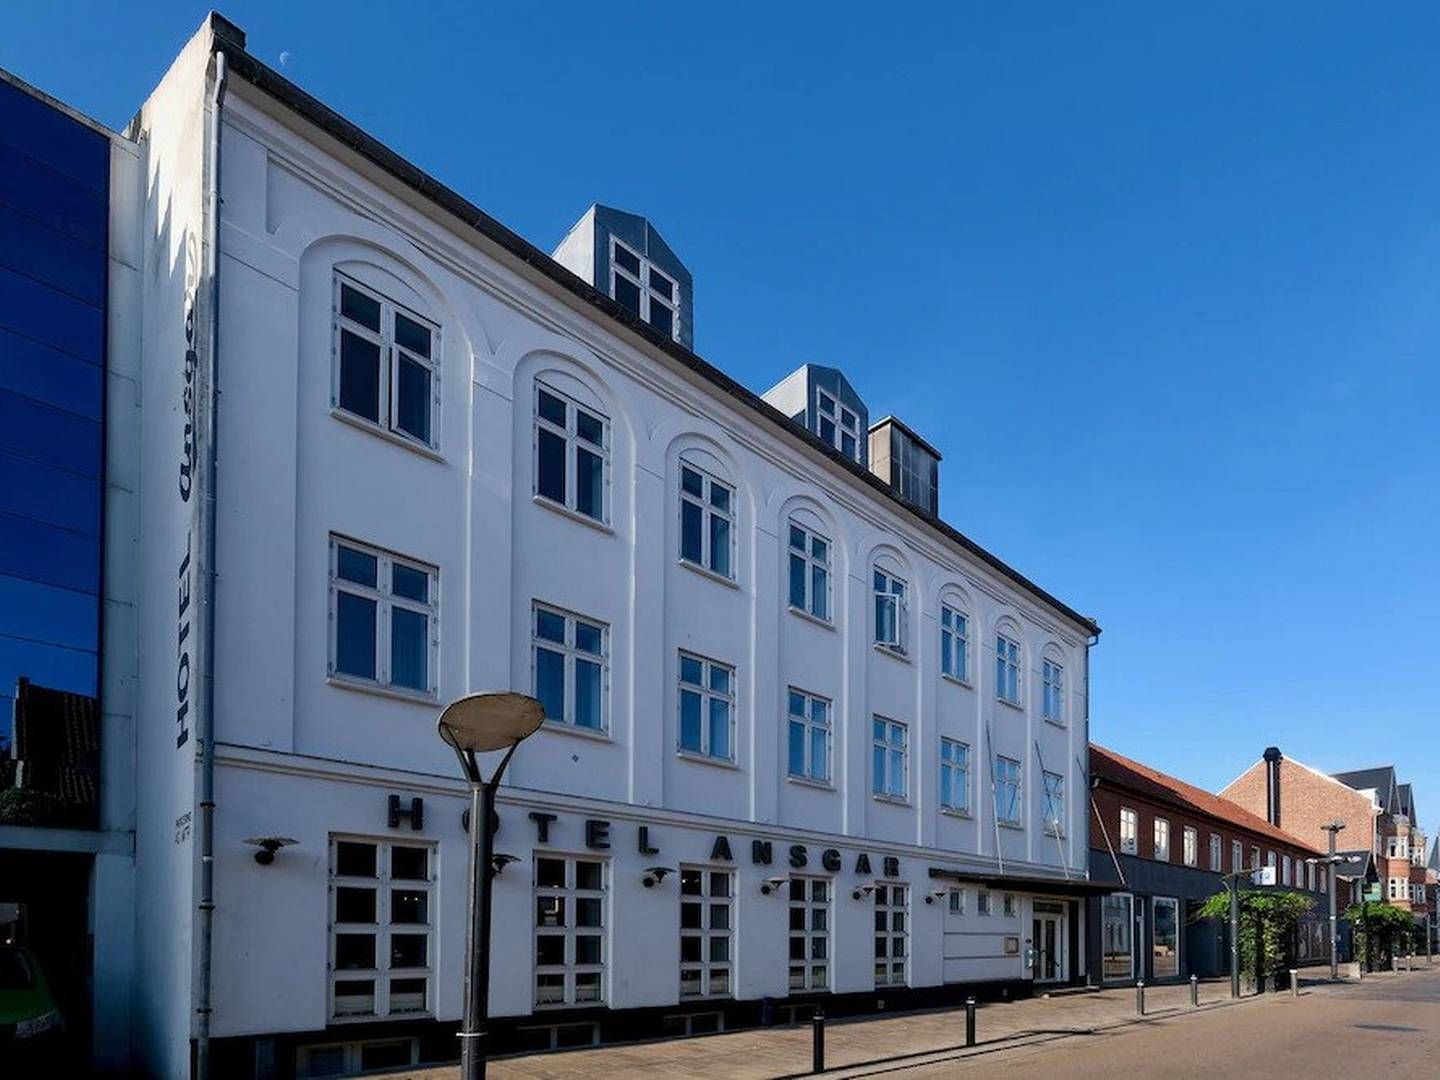 Hotel Ansgar ligger i Skolegade centralt i Esbjerg. Det er byens ældste hotel og har tidligere været ejet af Lars Hedeby Sørensen gennem Hedeby Hotel Group. | Foto: Google Street View